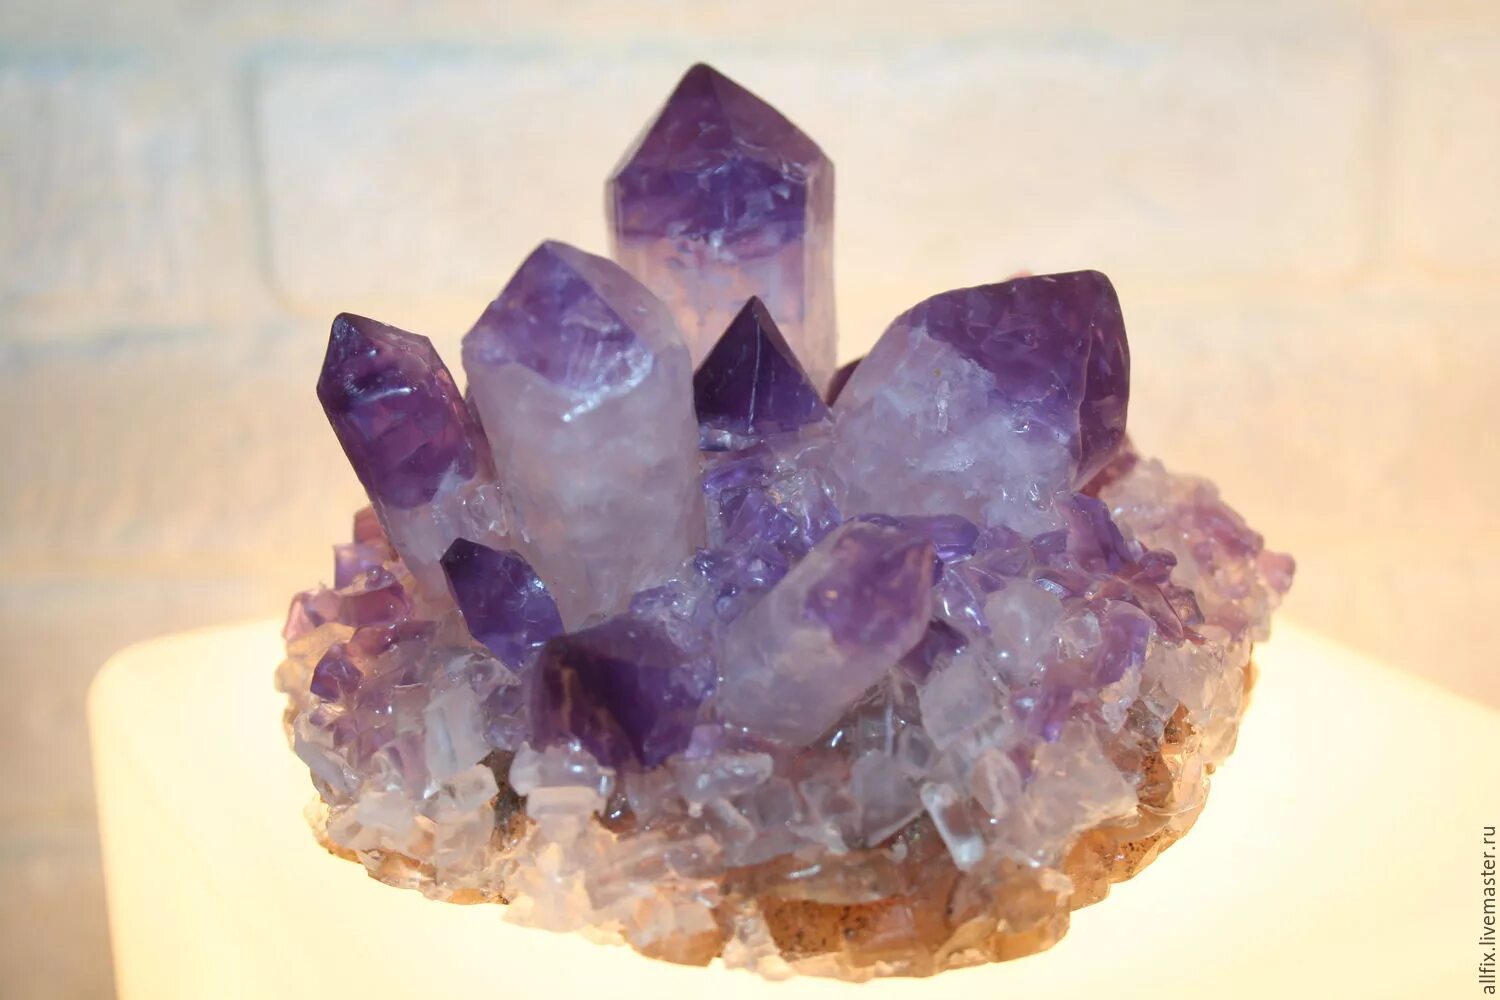 Crystal мыло. Камень в виде кристалла. Мыло аметист. Мыло в виде камней. Мыло в виде кристаллов.